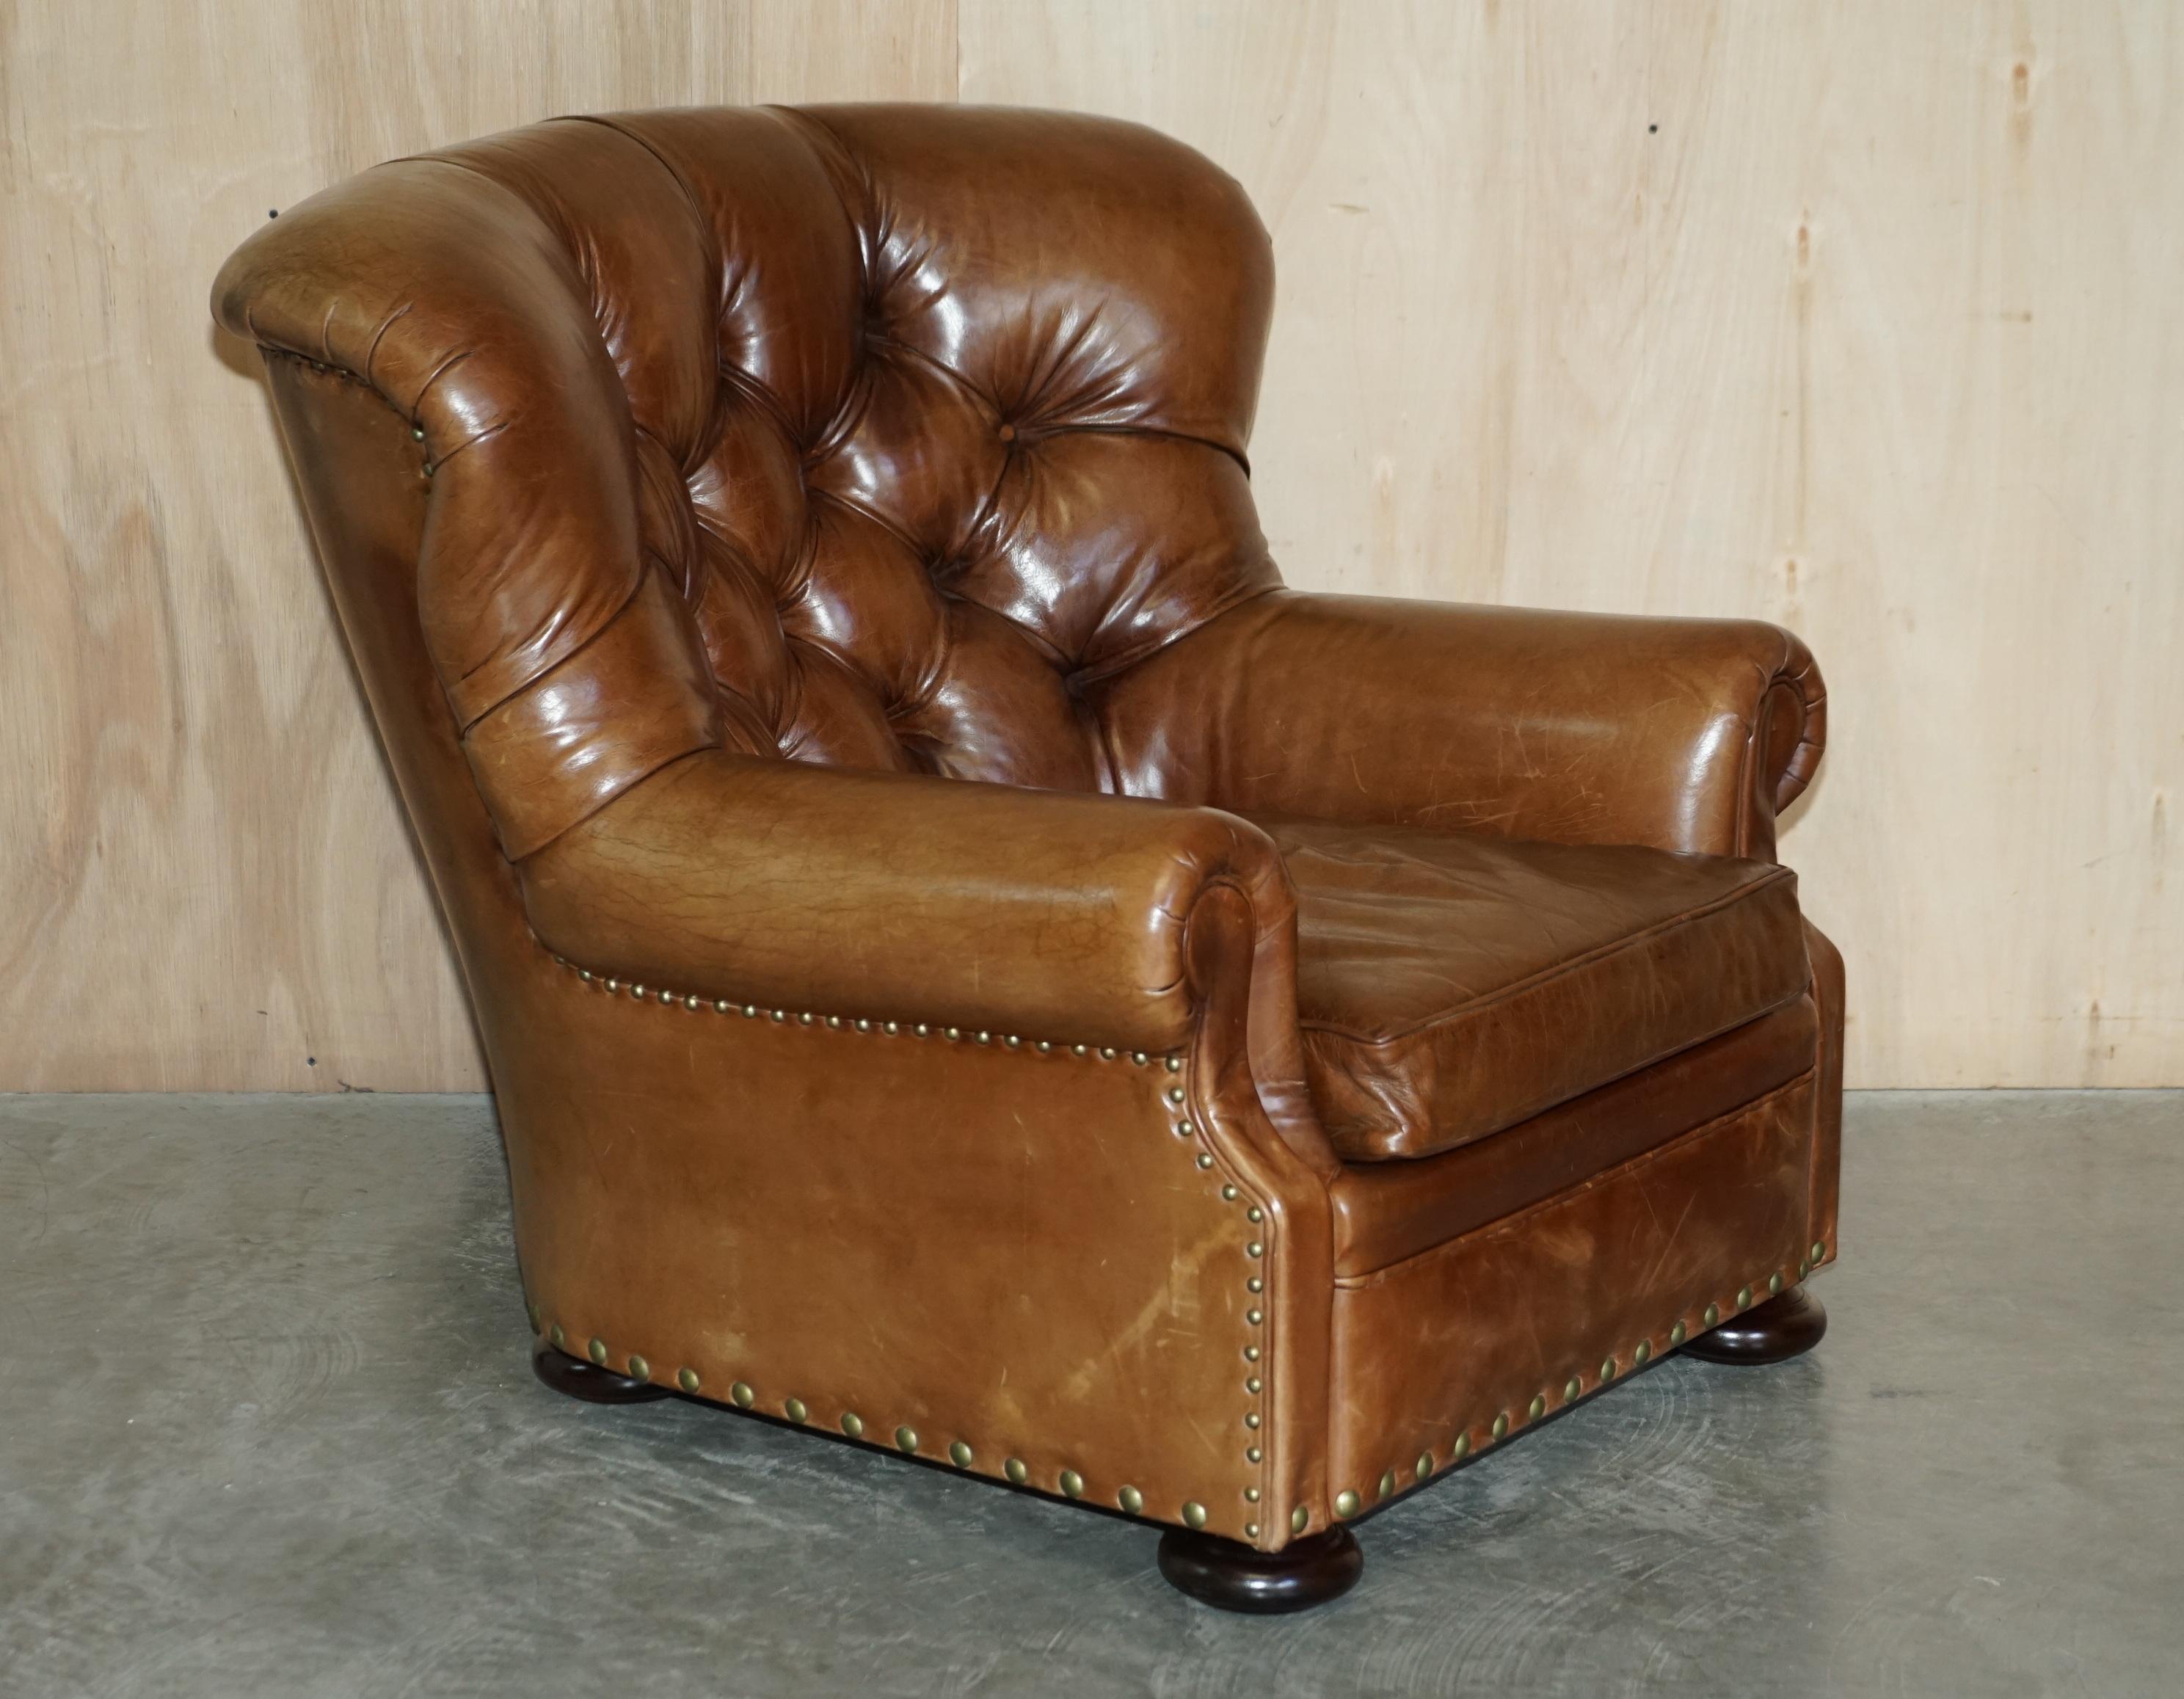 Wir freuen uns, dieses atemberaubende Original Ralph Lauren Writers Sessel und passende Ottomane RRP £ 15.745 in gealterten braunen Vintage-Ledersessel zum Verkauf anbieten.

Ein fantastischer ikonischer Sessel, das Original hat in seiner Zeit